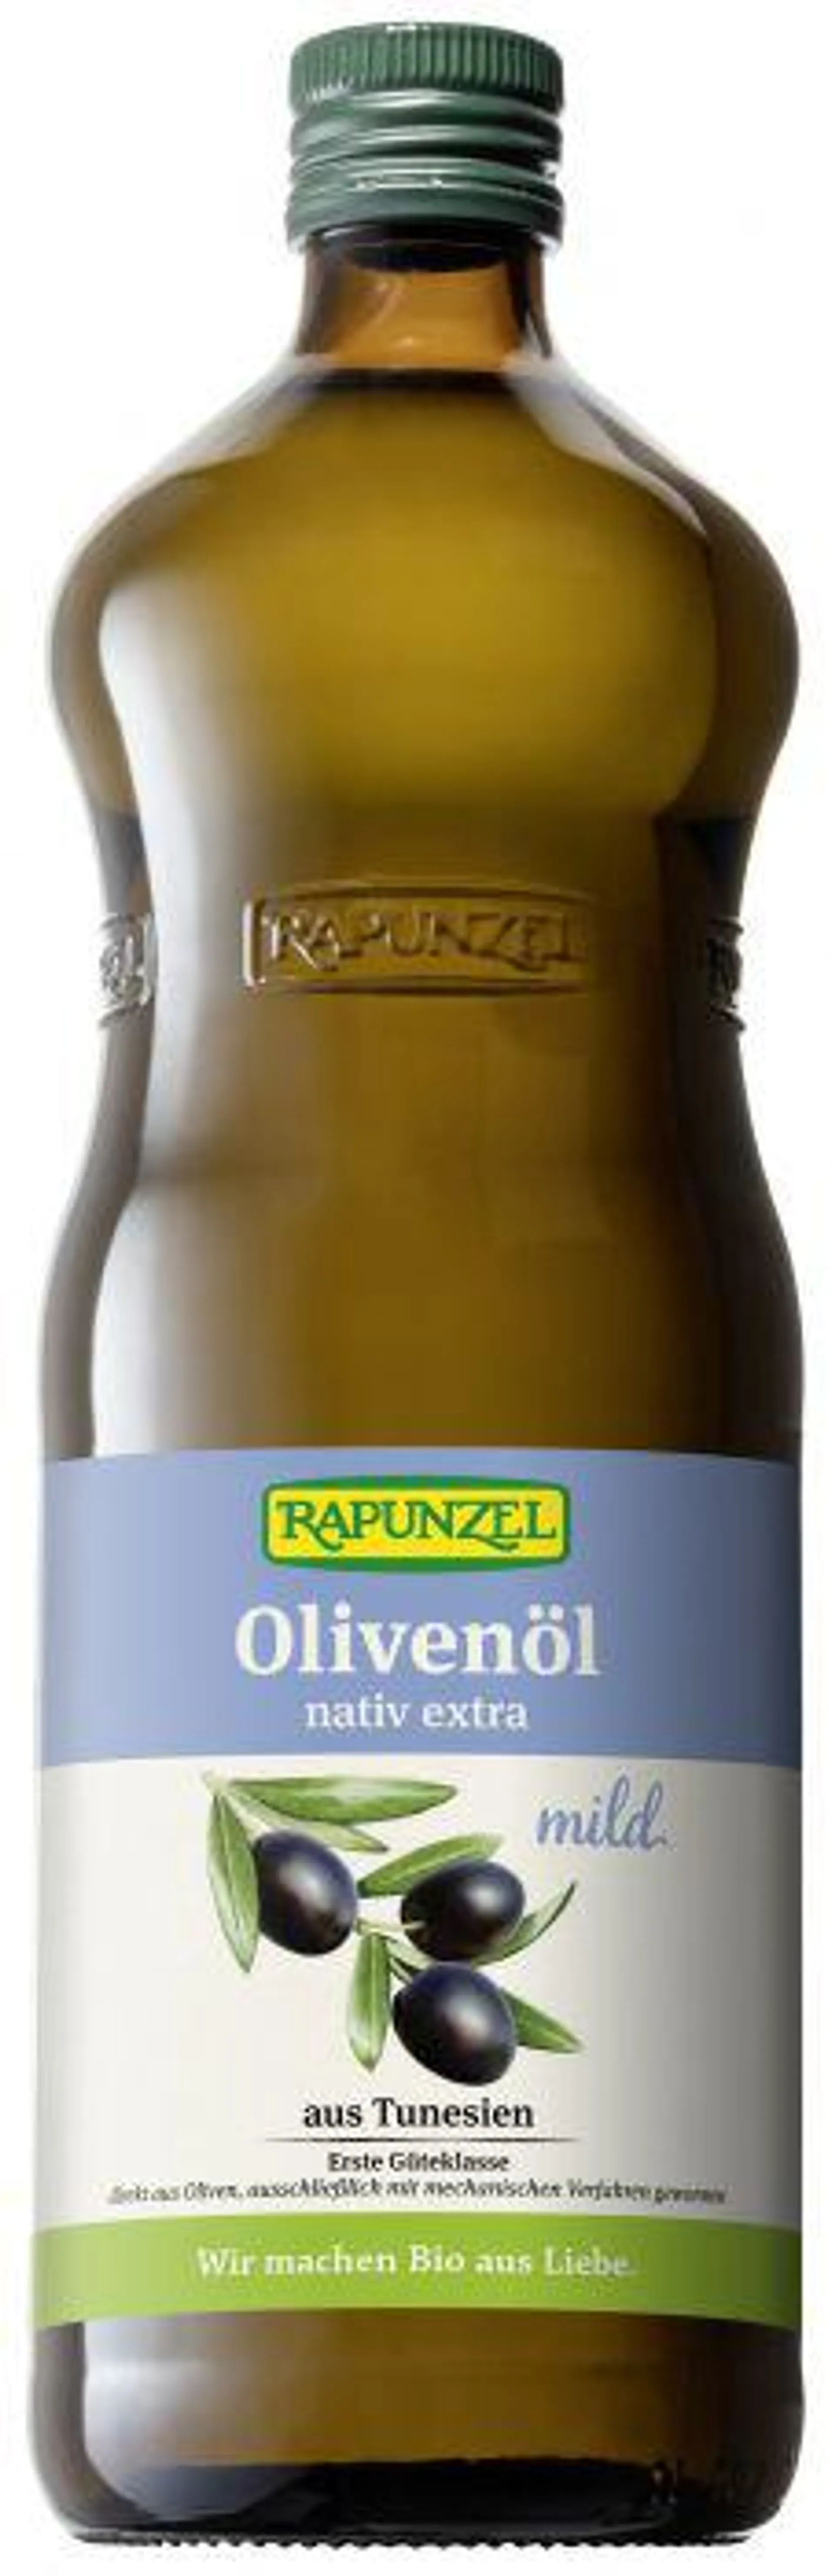 Rapunzel Olivenöl mild, nativ extra 1l